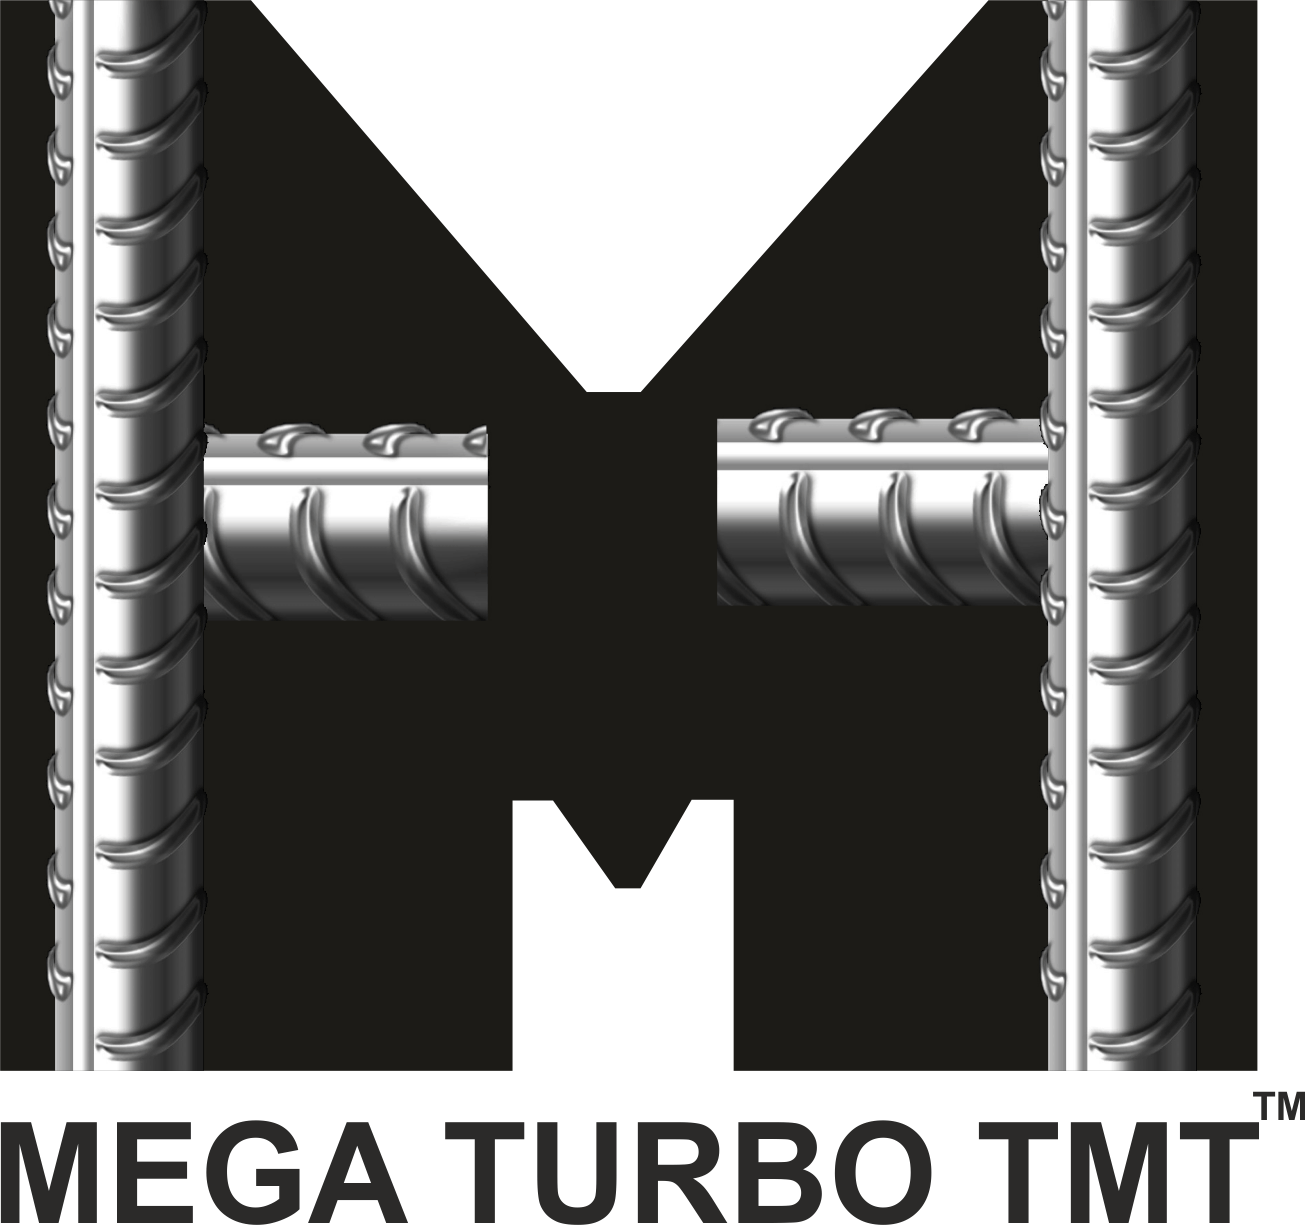 Meghalaya Steels - Mega Turbo TMT